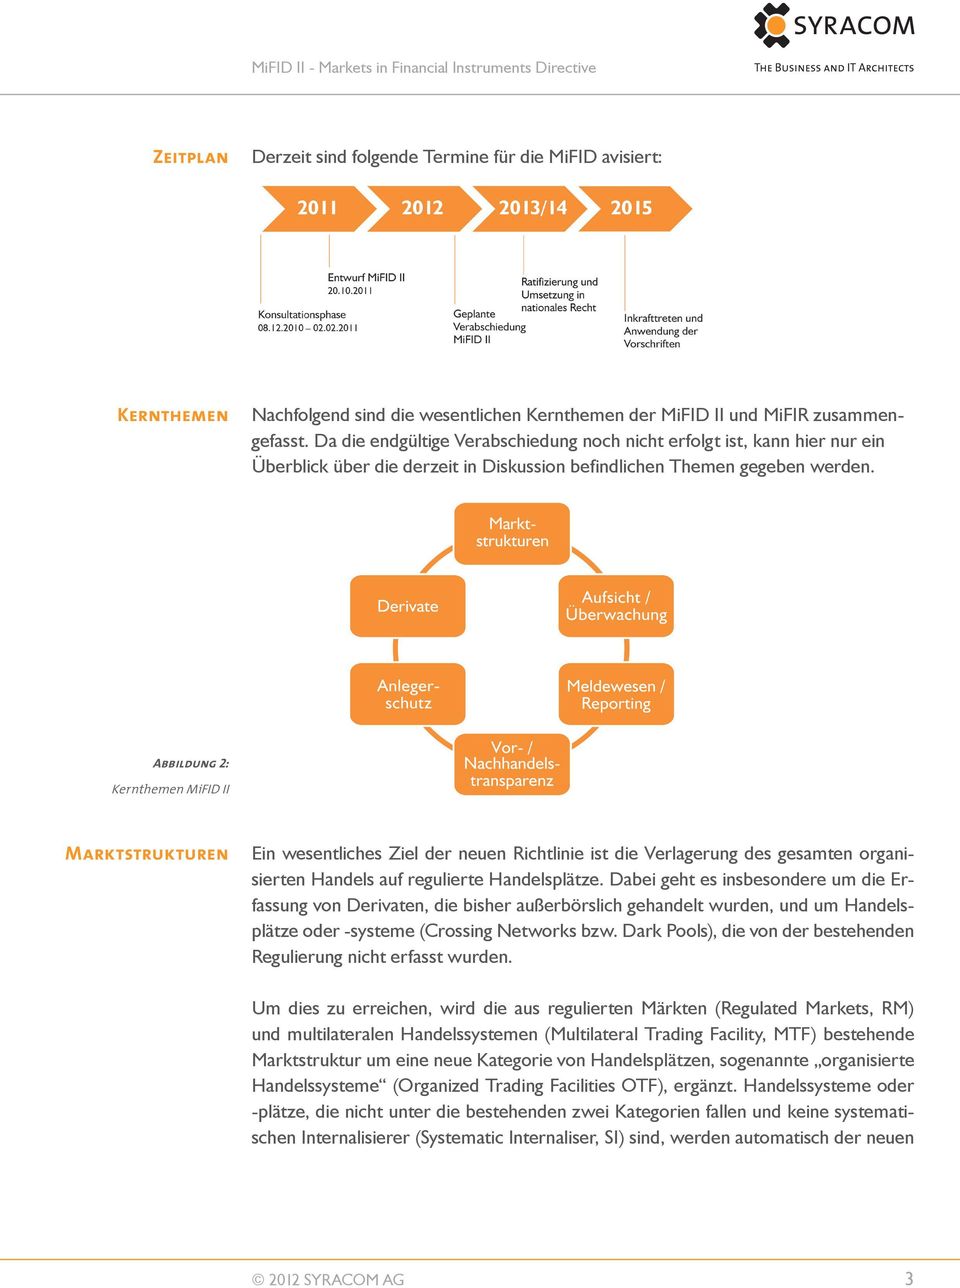 Abbildung 2: Kernthemen MiFID II Marktstrukturen Ein wesentliches Ziel der neuen Richtlinie ist die Verlagerung des gesamten organisierten Handels auf regulierte Handelsplätze.